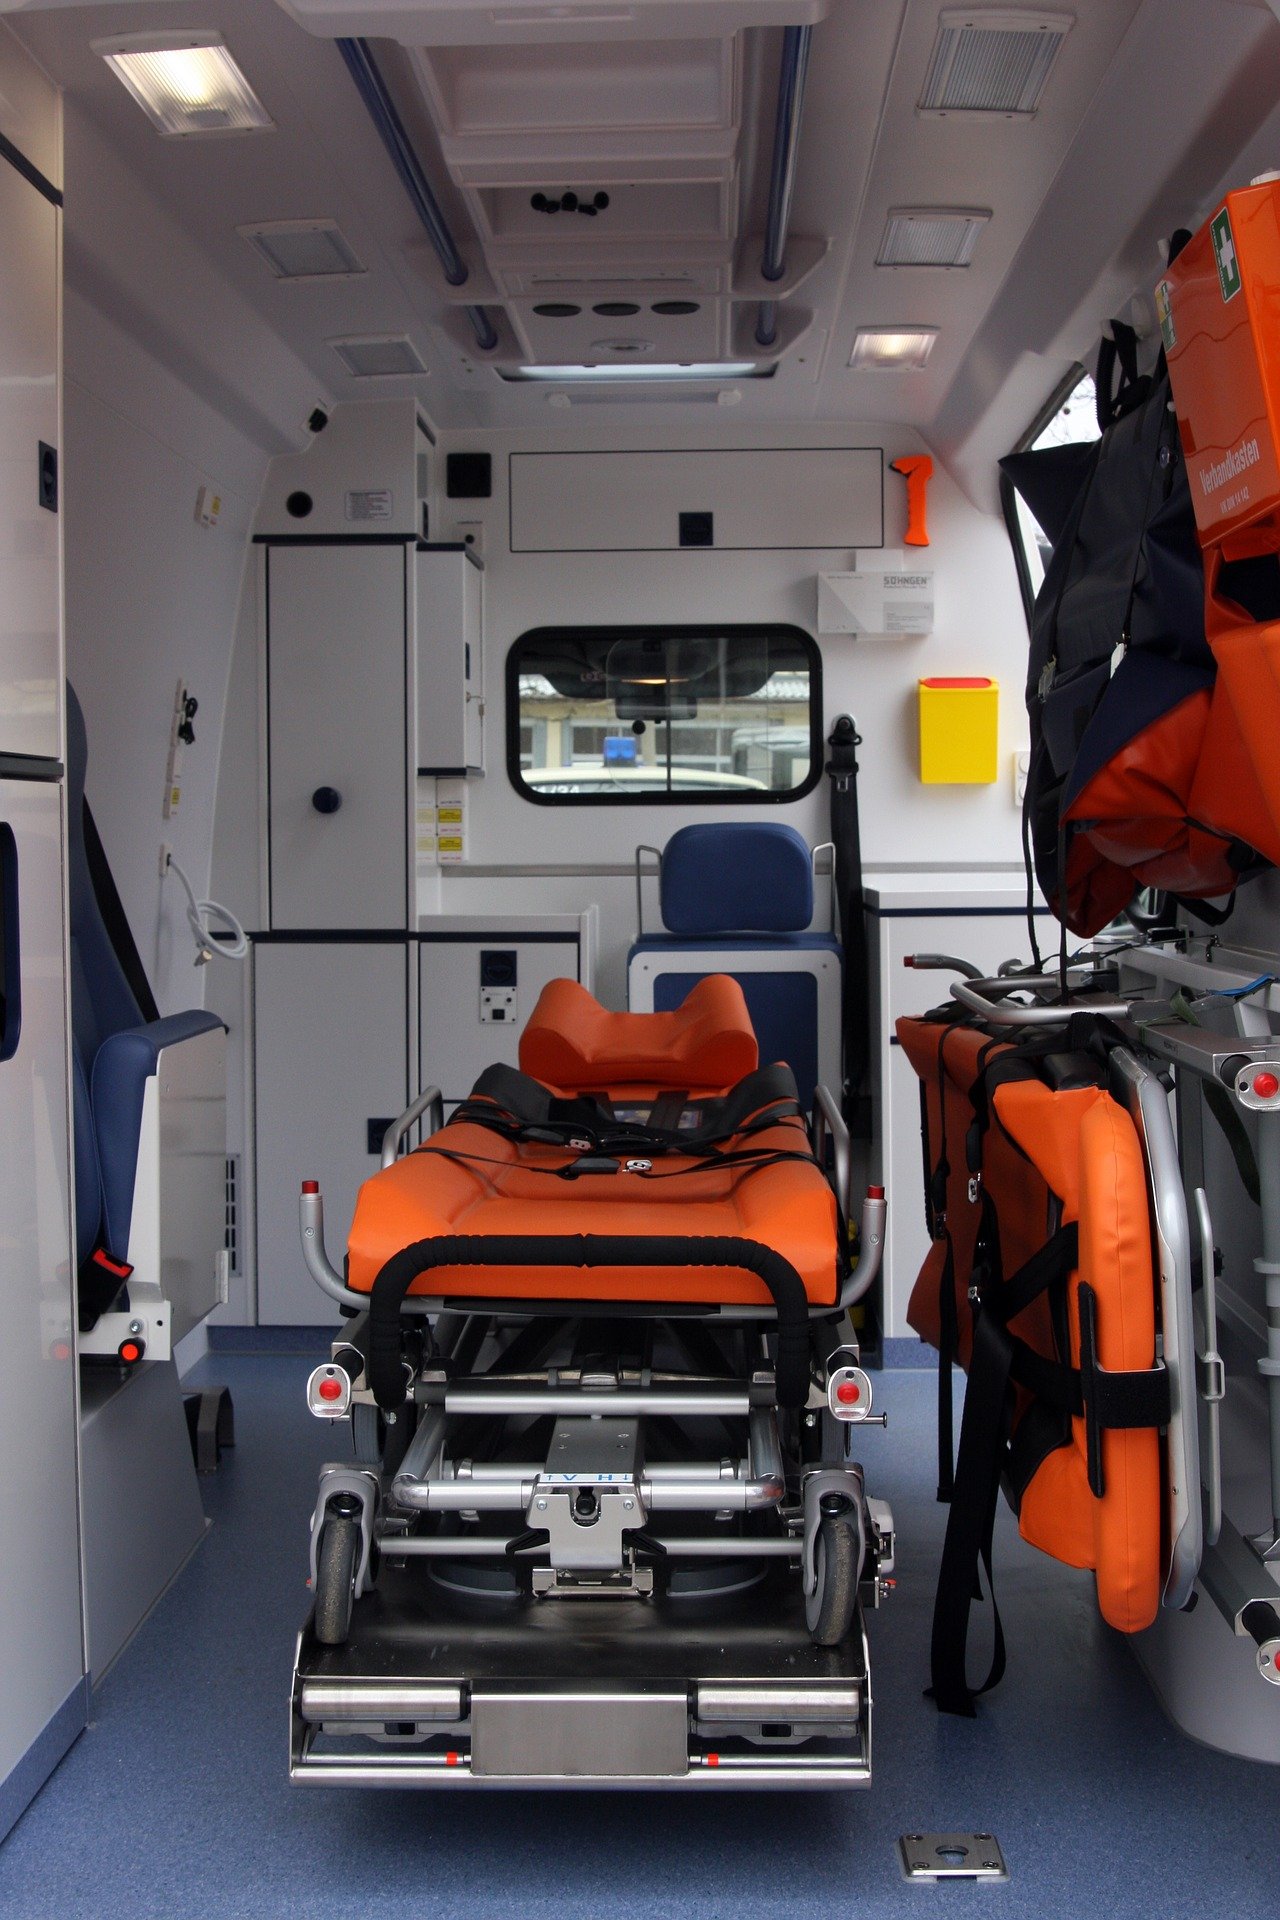 À l'intérieur d'un véhicule d'urgence médicale. | Photo : Pixabay